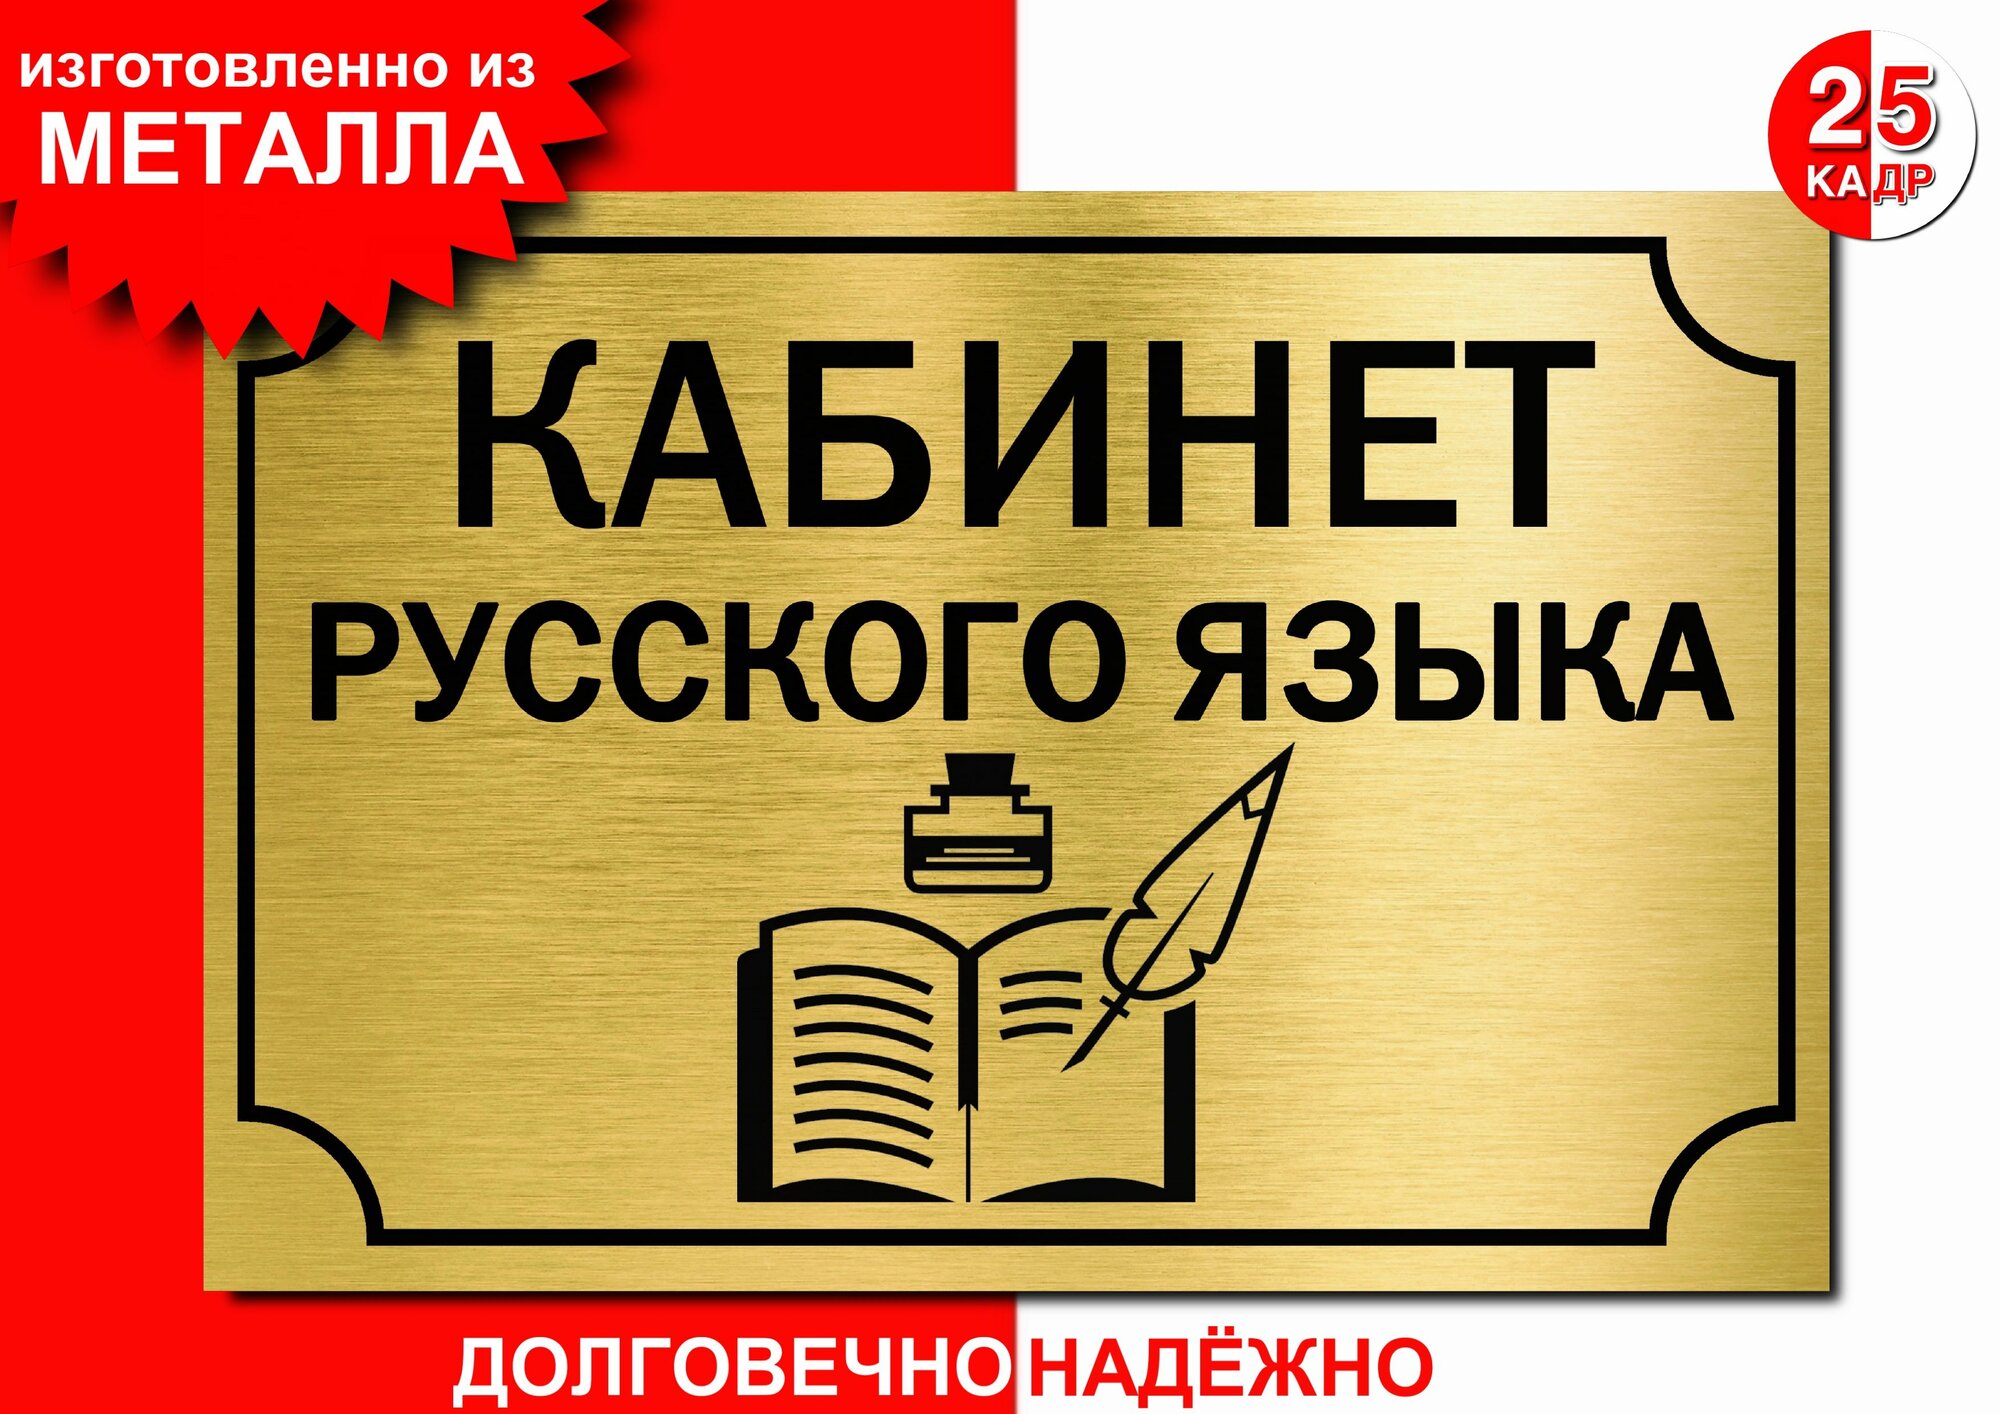 Табличка, на металле "Кабинет русского языка", цвет золото